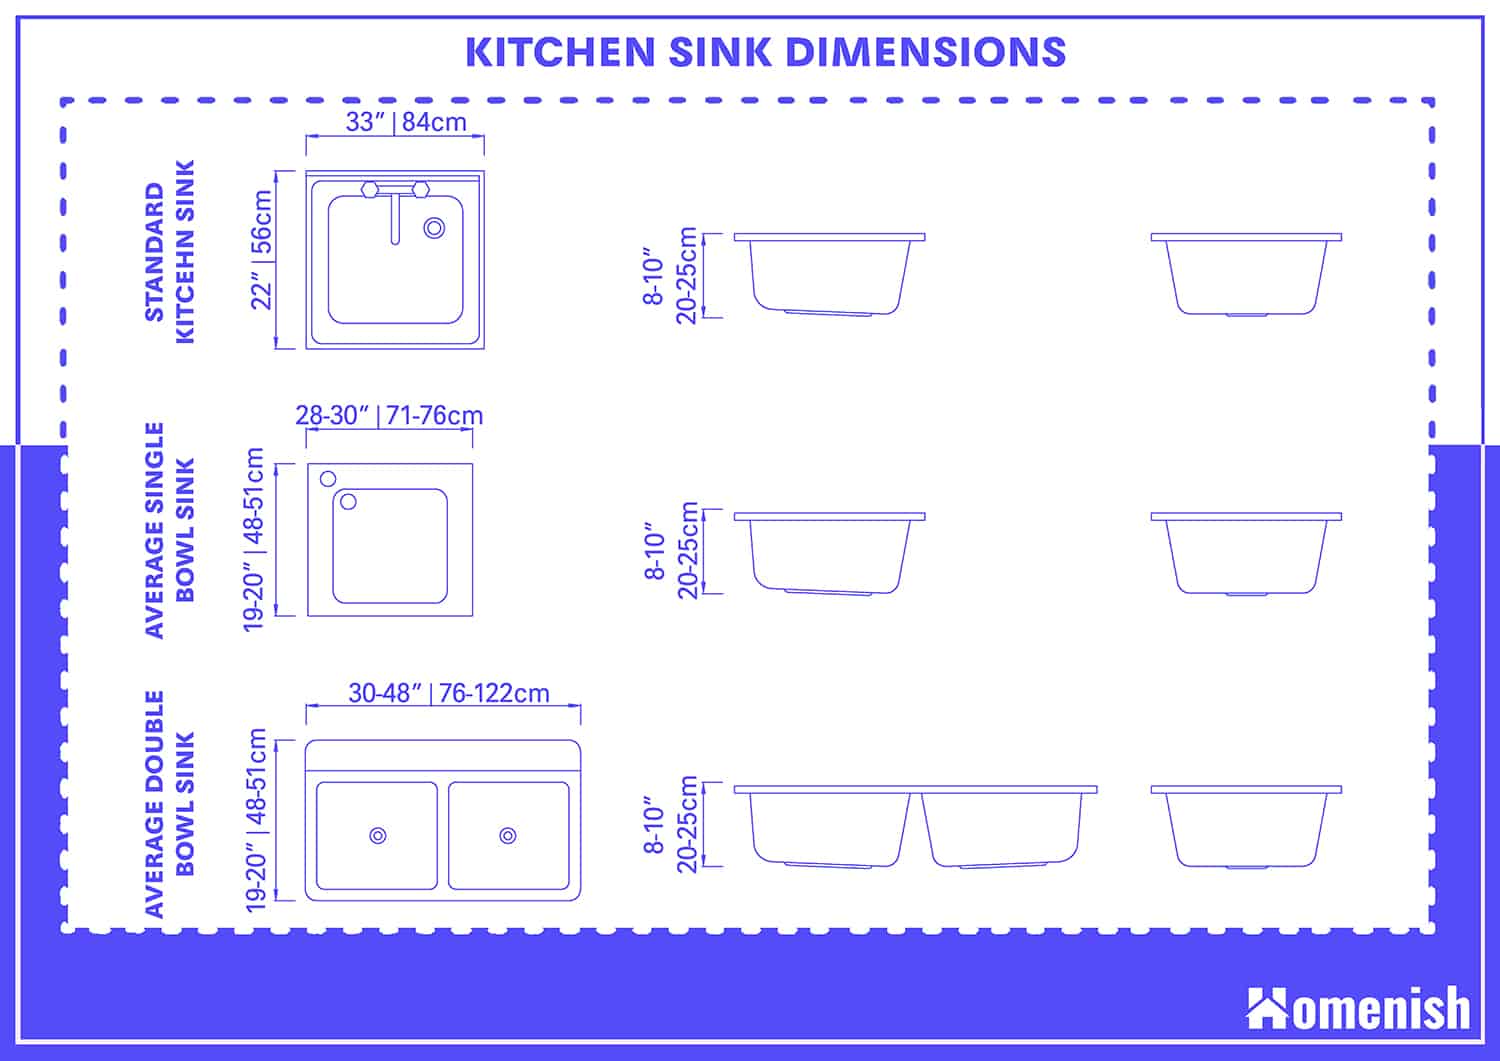 kitchen sink market size in india